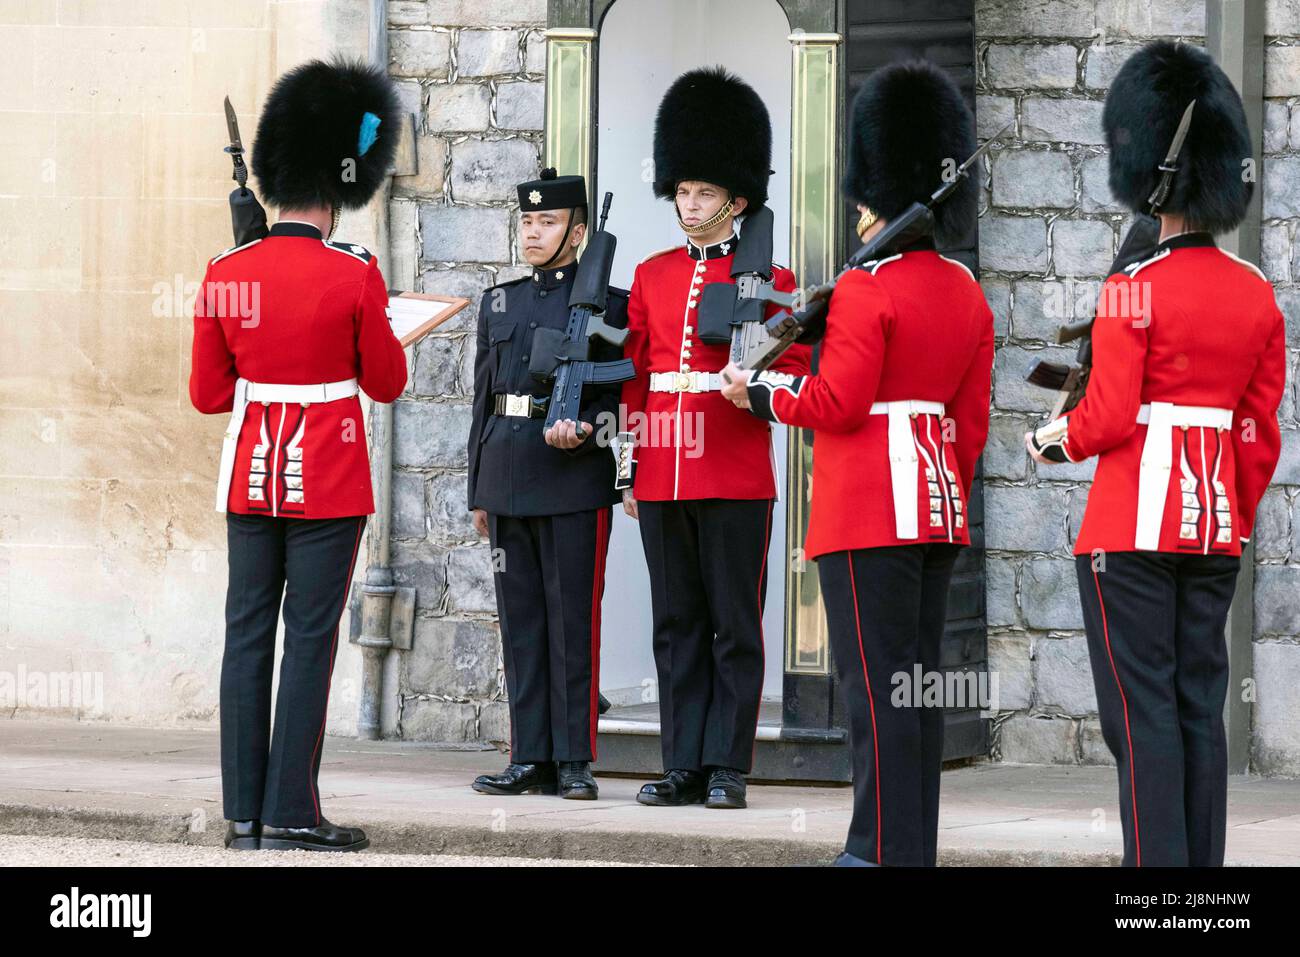 Les gardes irlandais prennent en charge les fonctions de garde cérémonielles au château de Windsor à partir des Gurkha alors que les gardes irlandais se préparent à recevoir leurs nouvelles couleurs régimentaires du duc de Cambridge lors d'une cérémonie. Date de la photo: Mardi 17 mai 2022. Banque D'Images